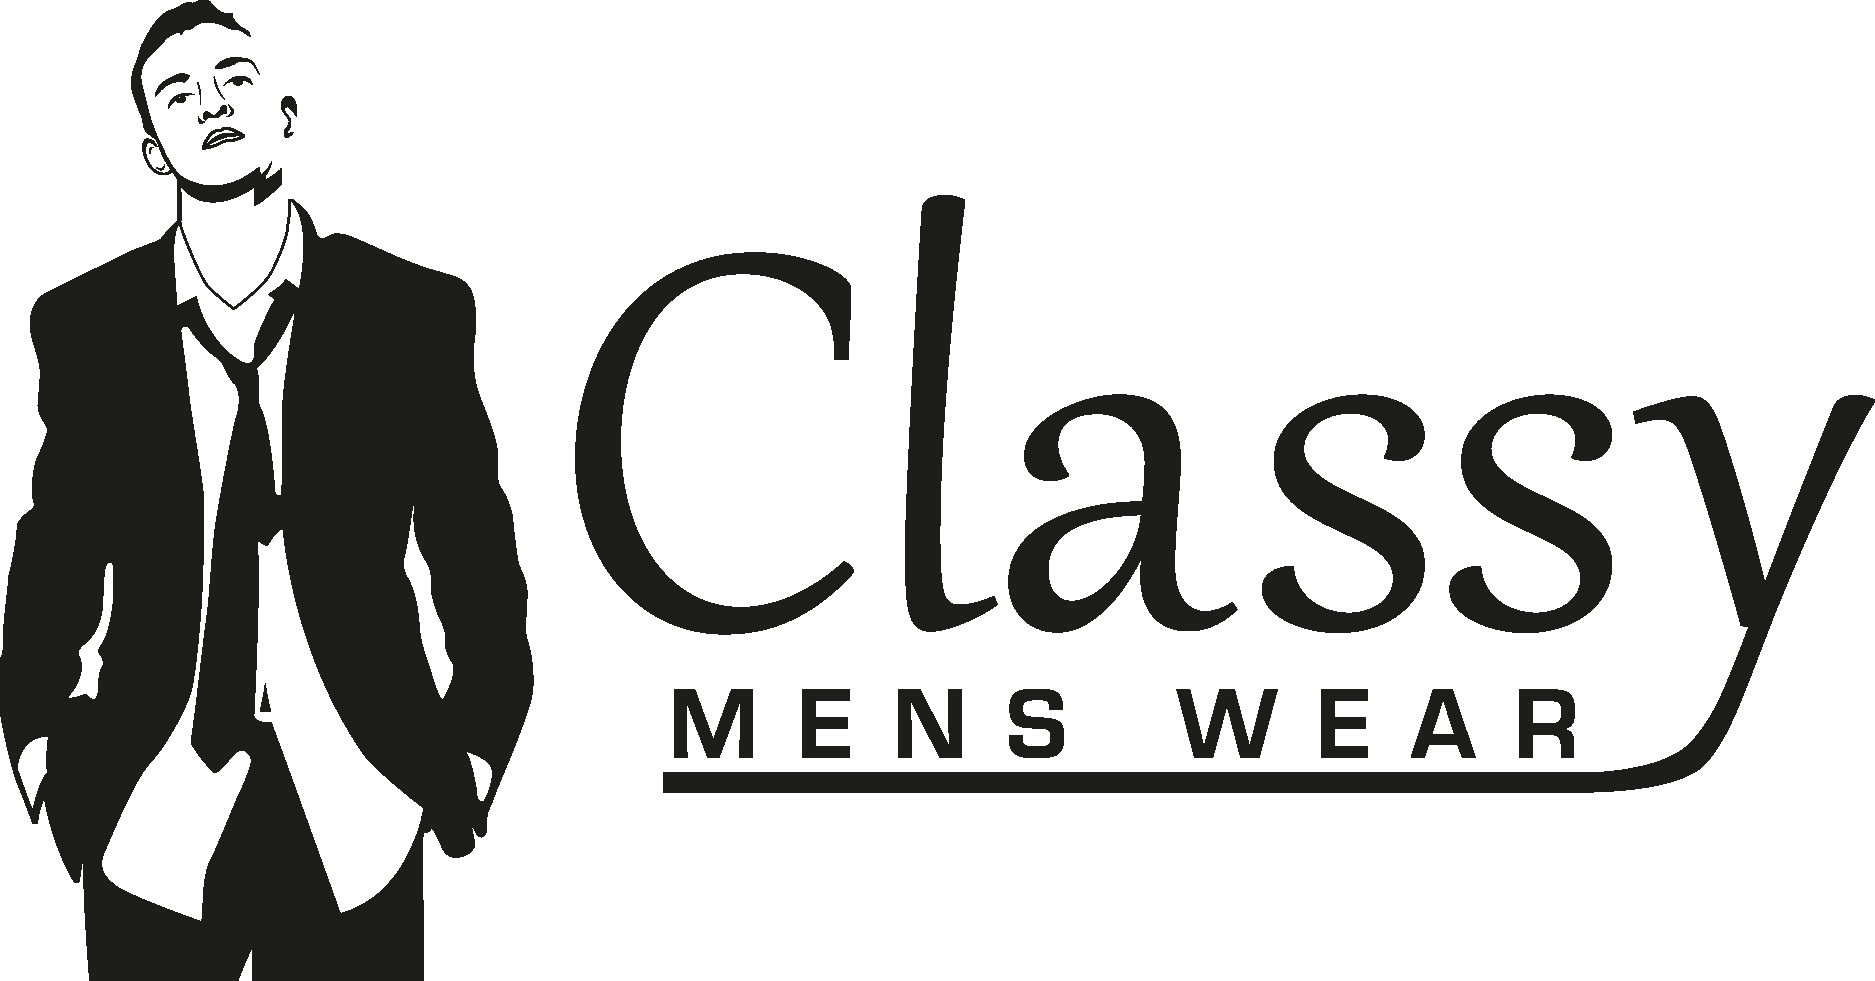 Classy Mens Wear Logo Vector